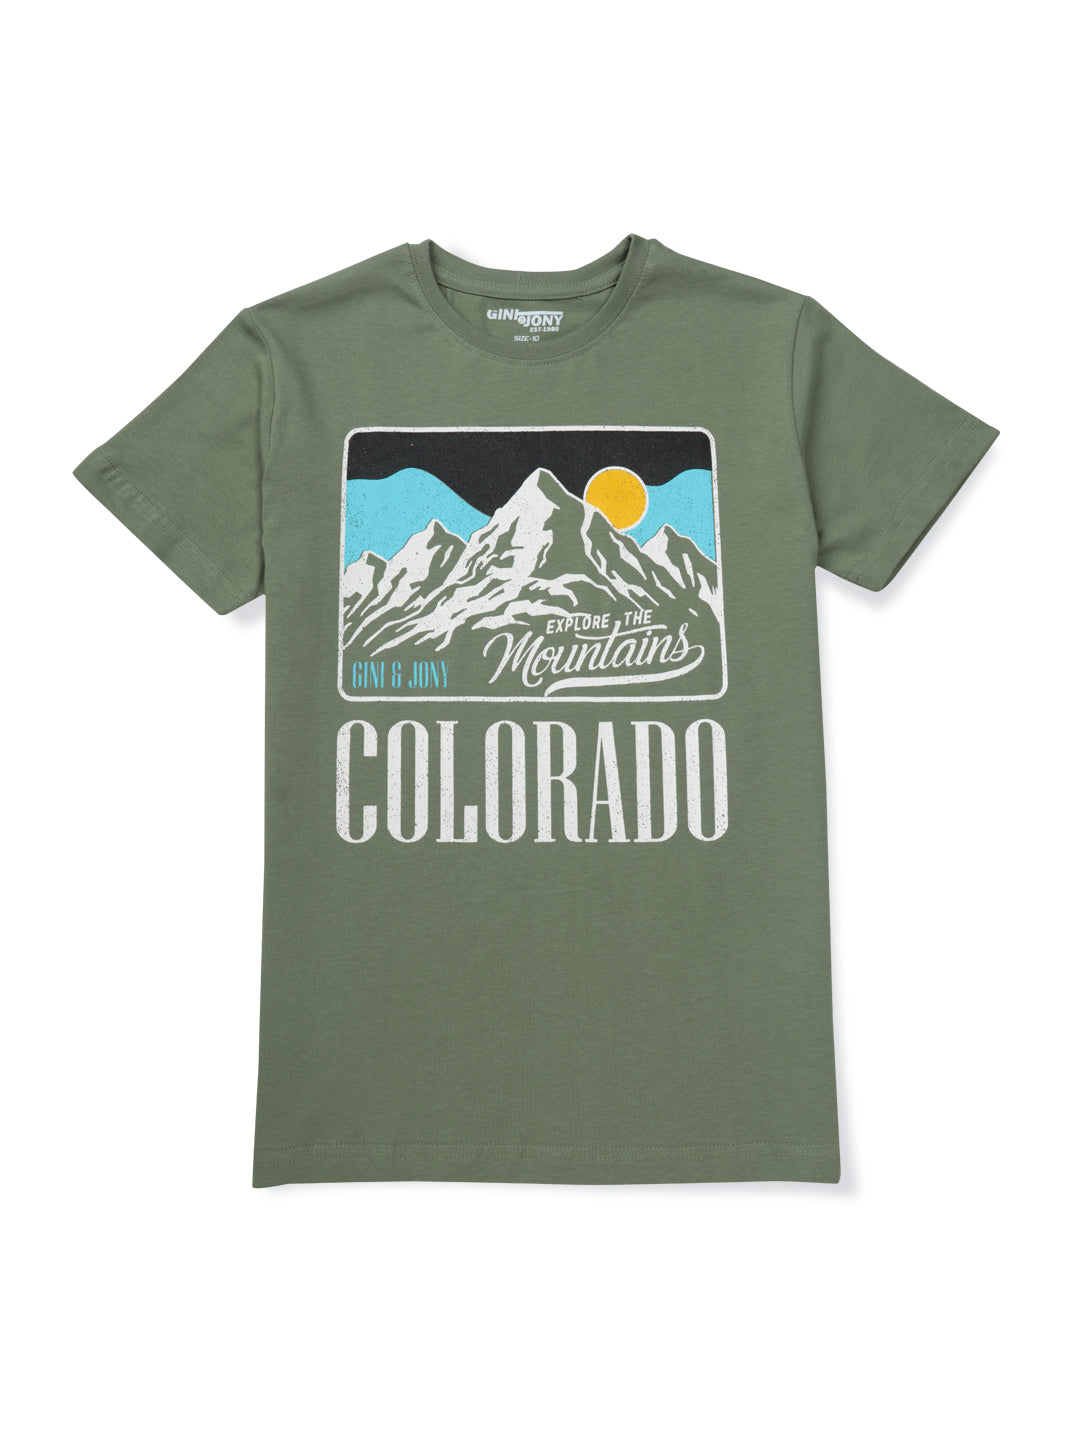 Boys Green Printed Cotton T-Shirt